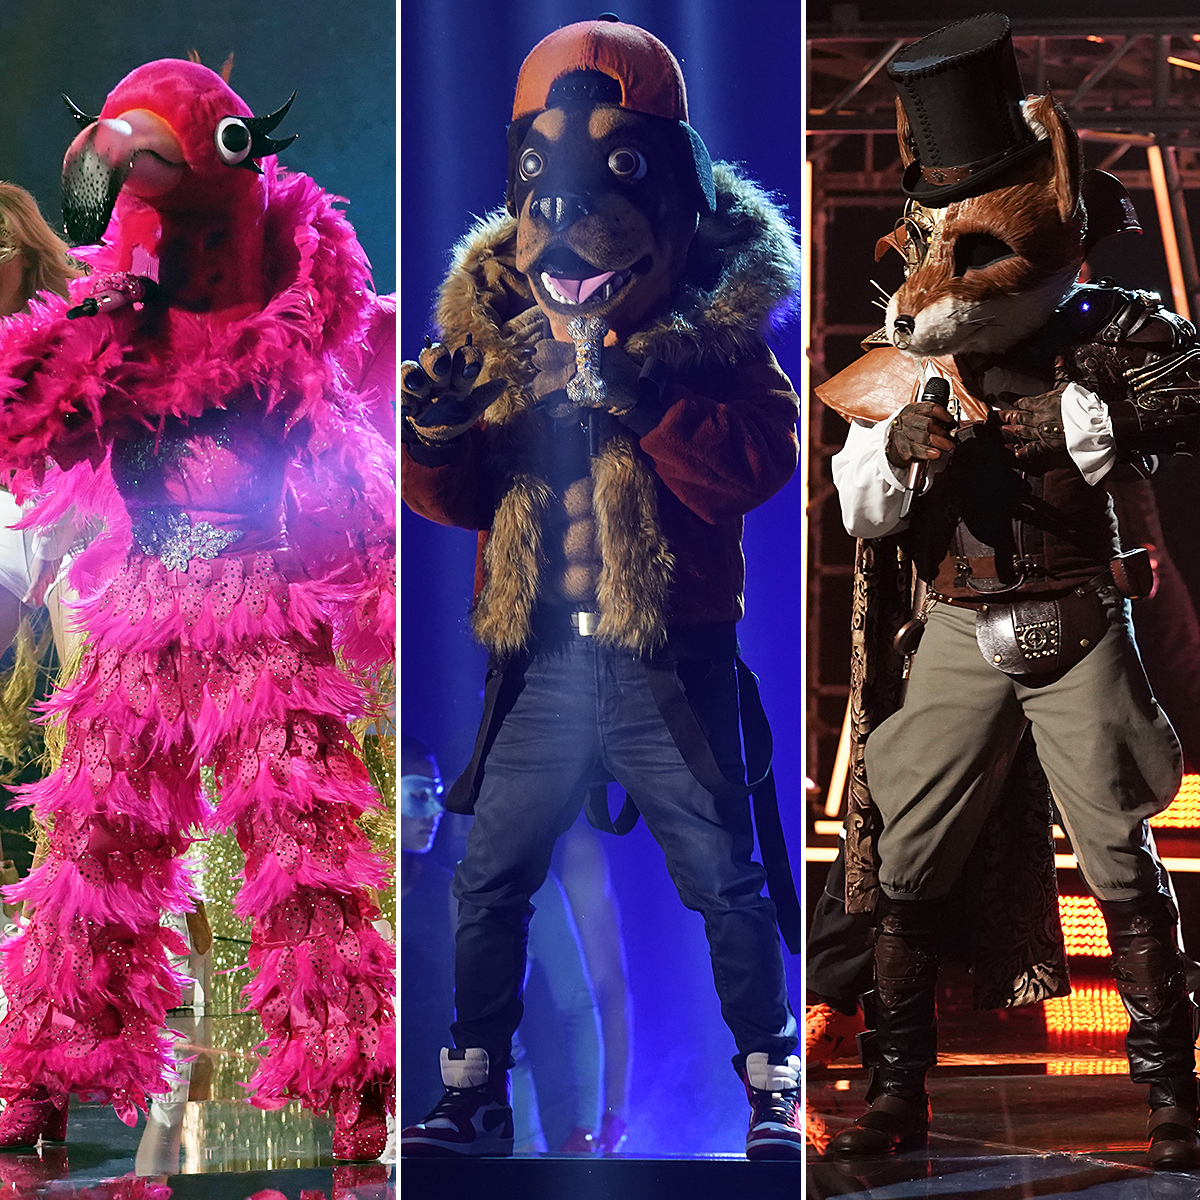 Who Won 'Masked Singer'? Fox, Flamingo, Rottweiler Revealed Us Weekly